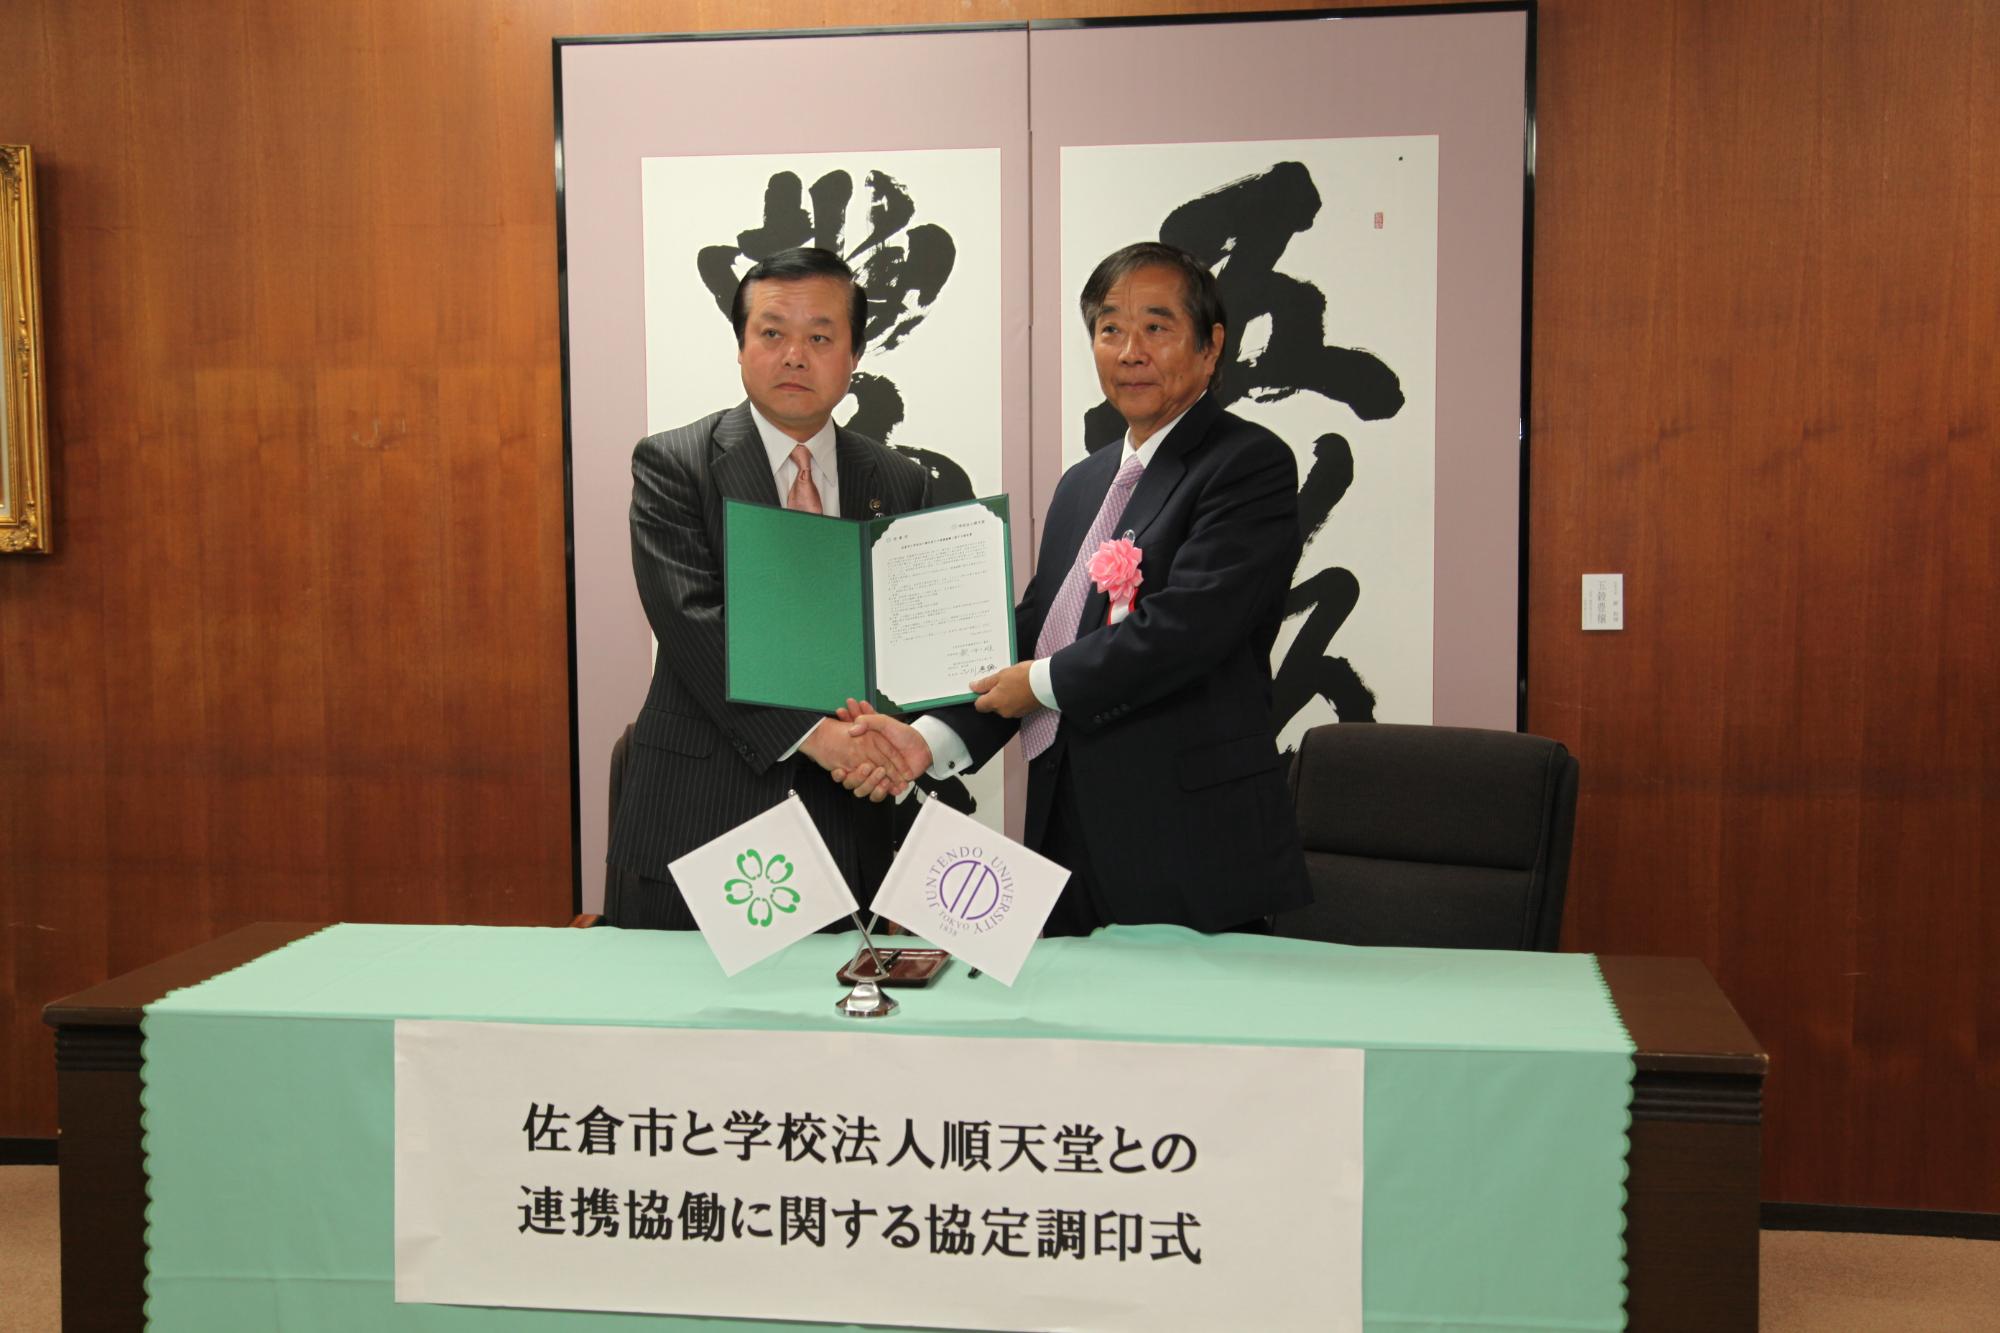 書物が記載された屏風の前で協定書を手に握手を交わしている蕨市長と順天堂理事長 小川さんの写真